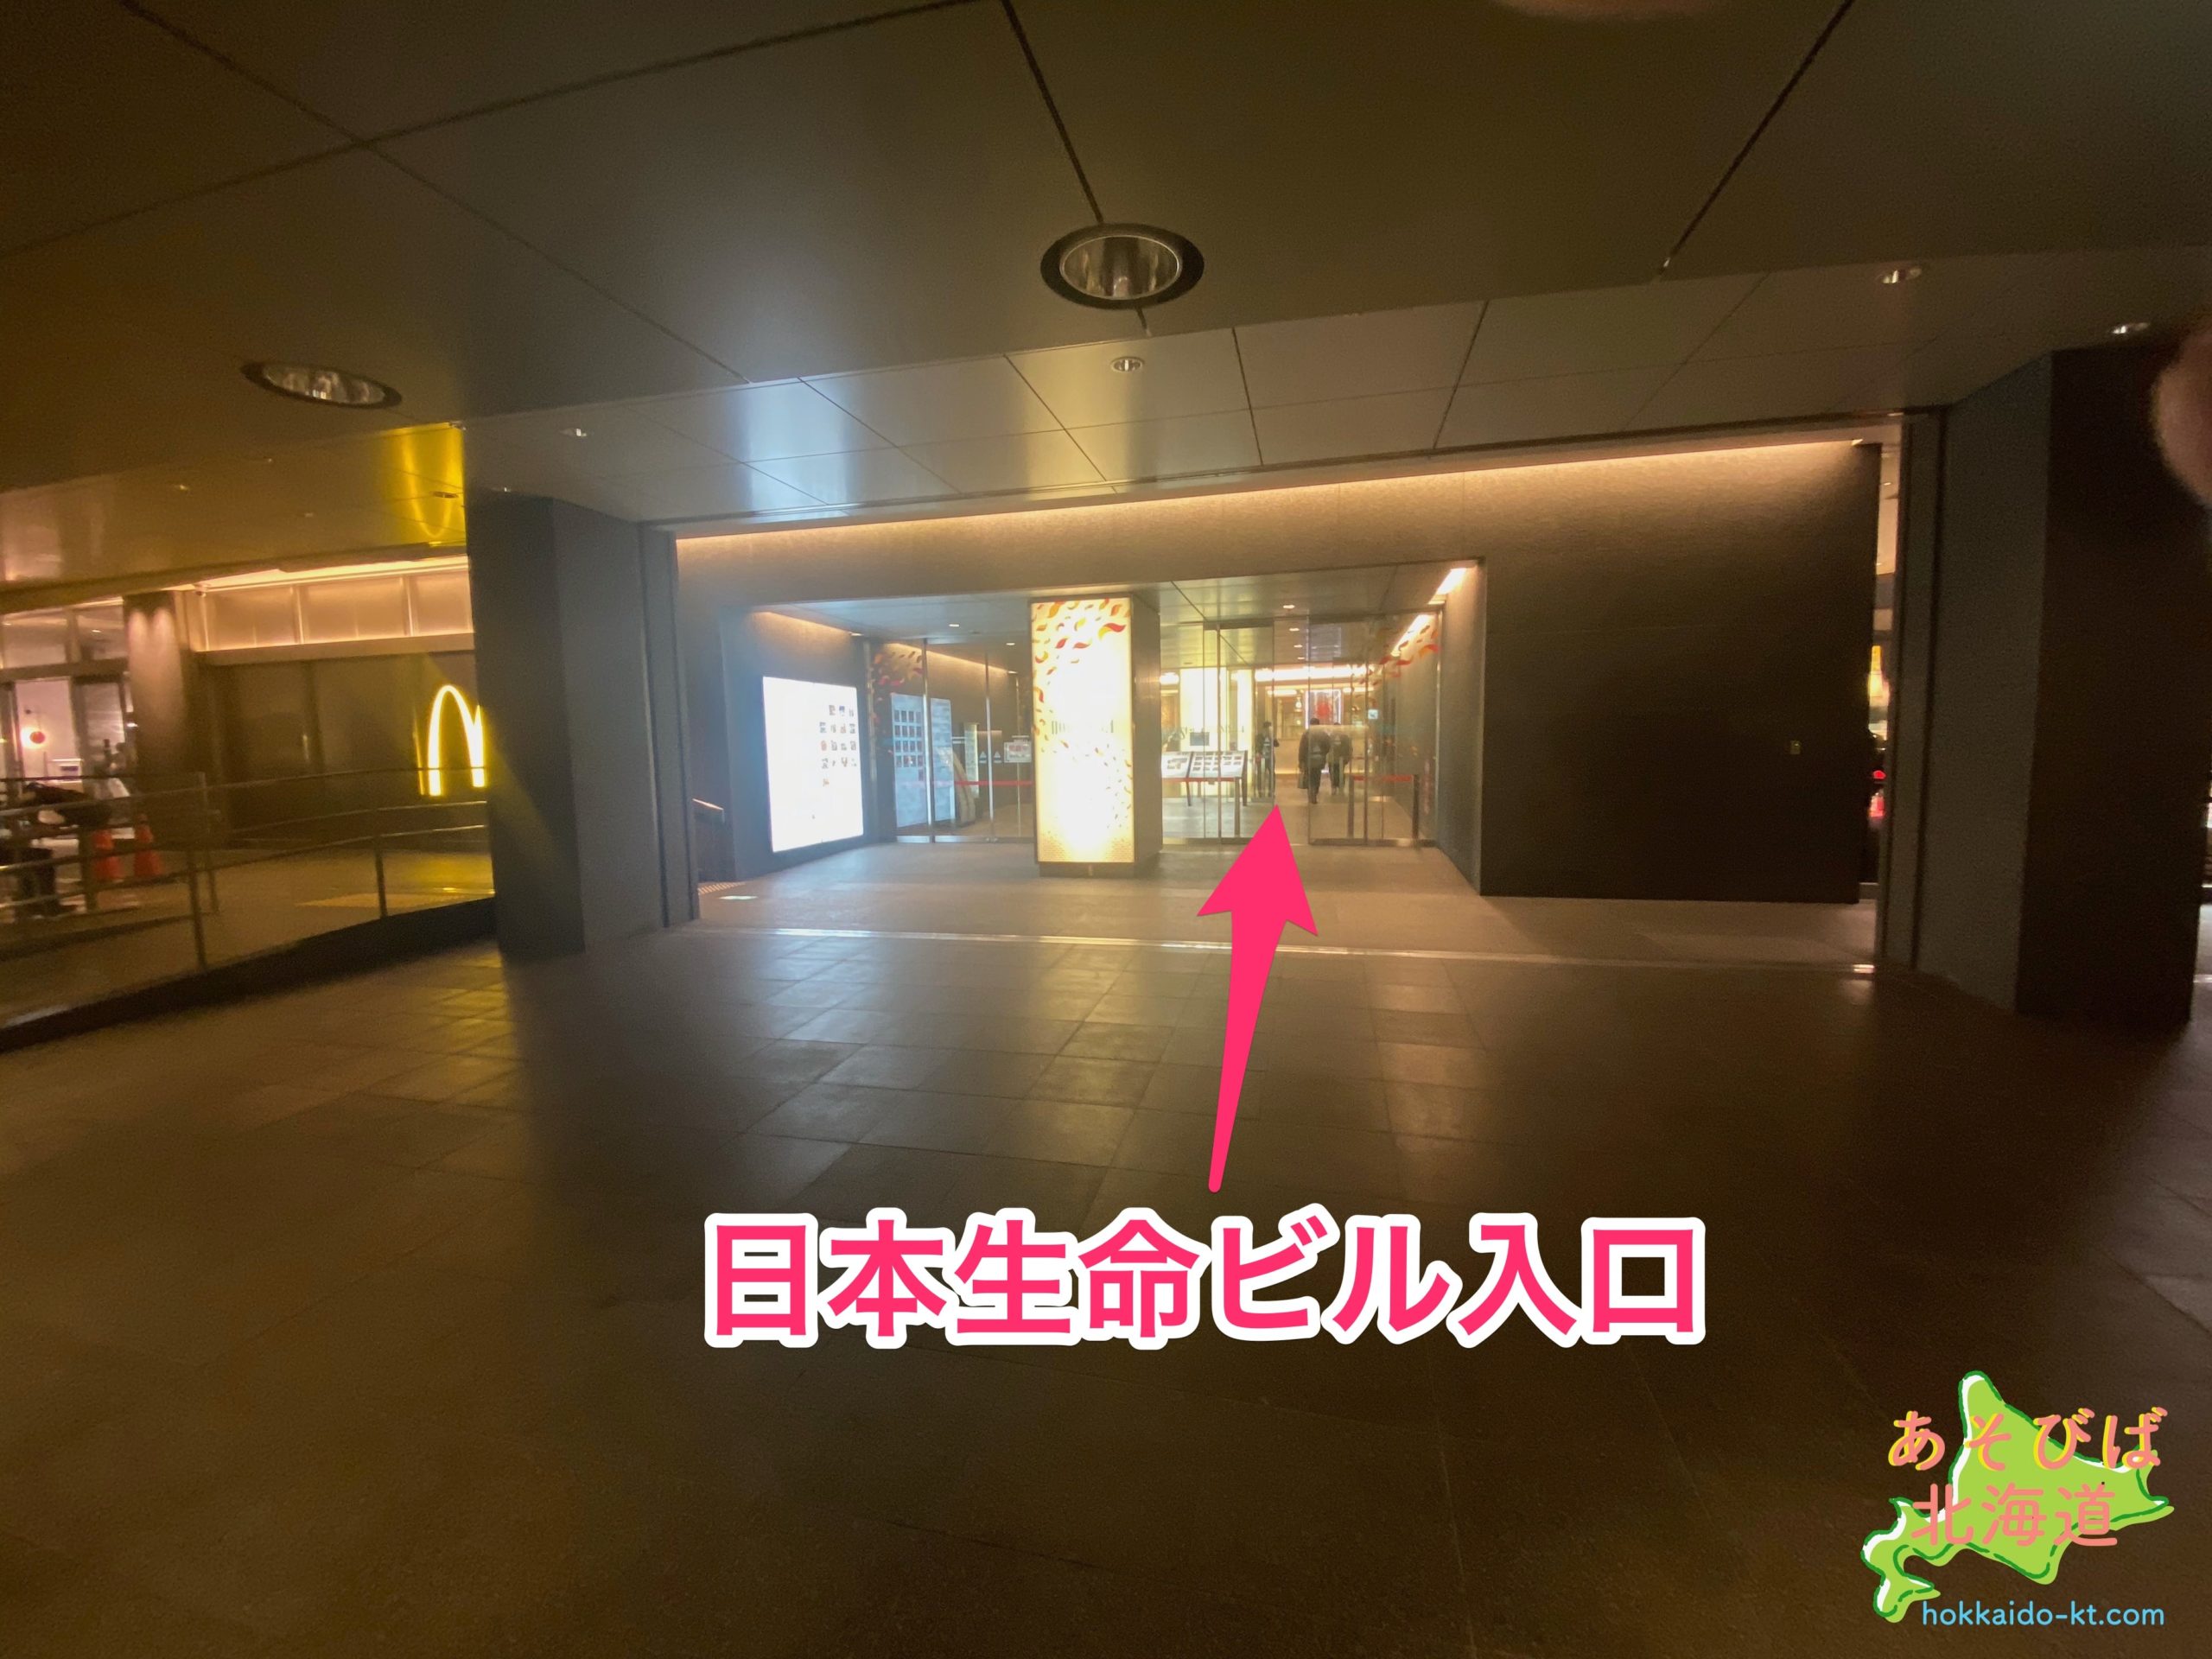 地下歩行空間から日本生命ビル入口